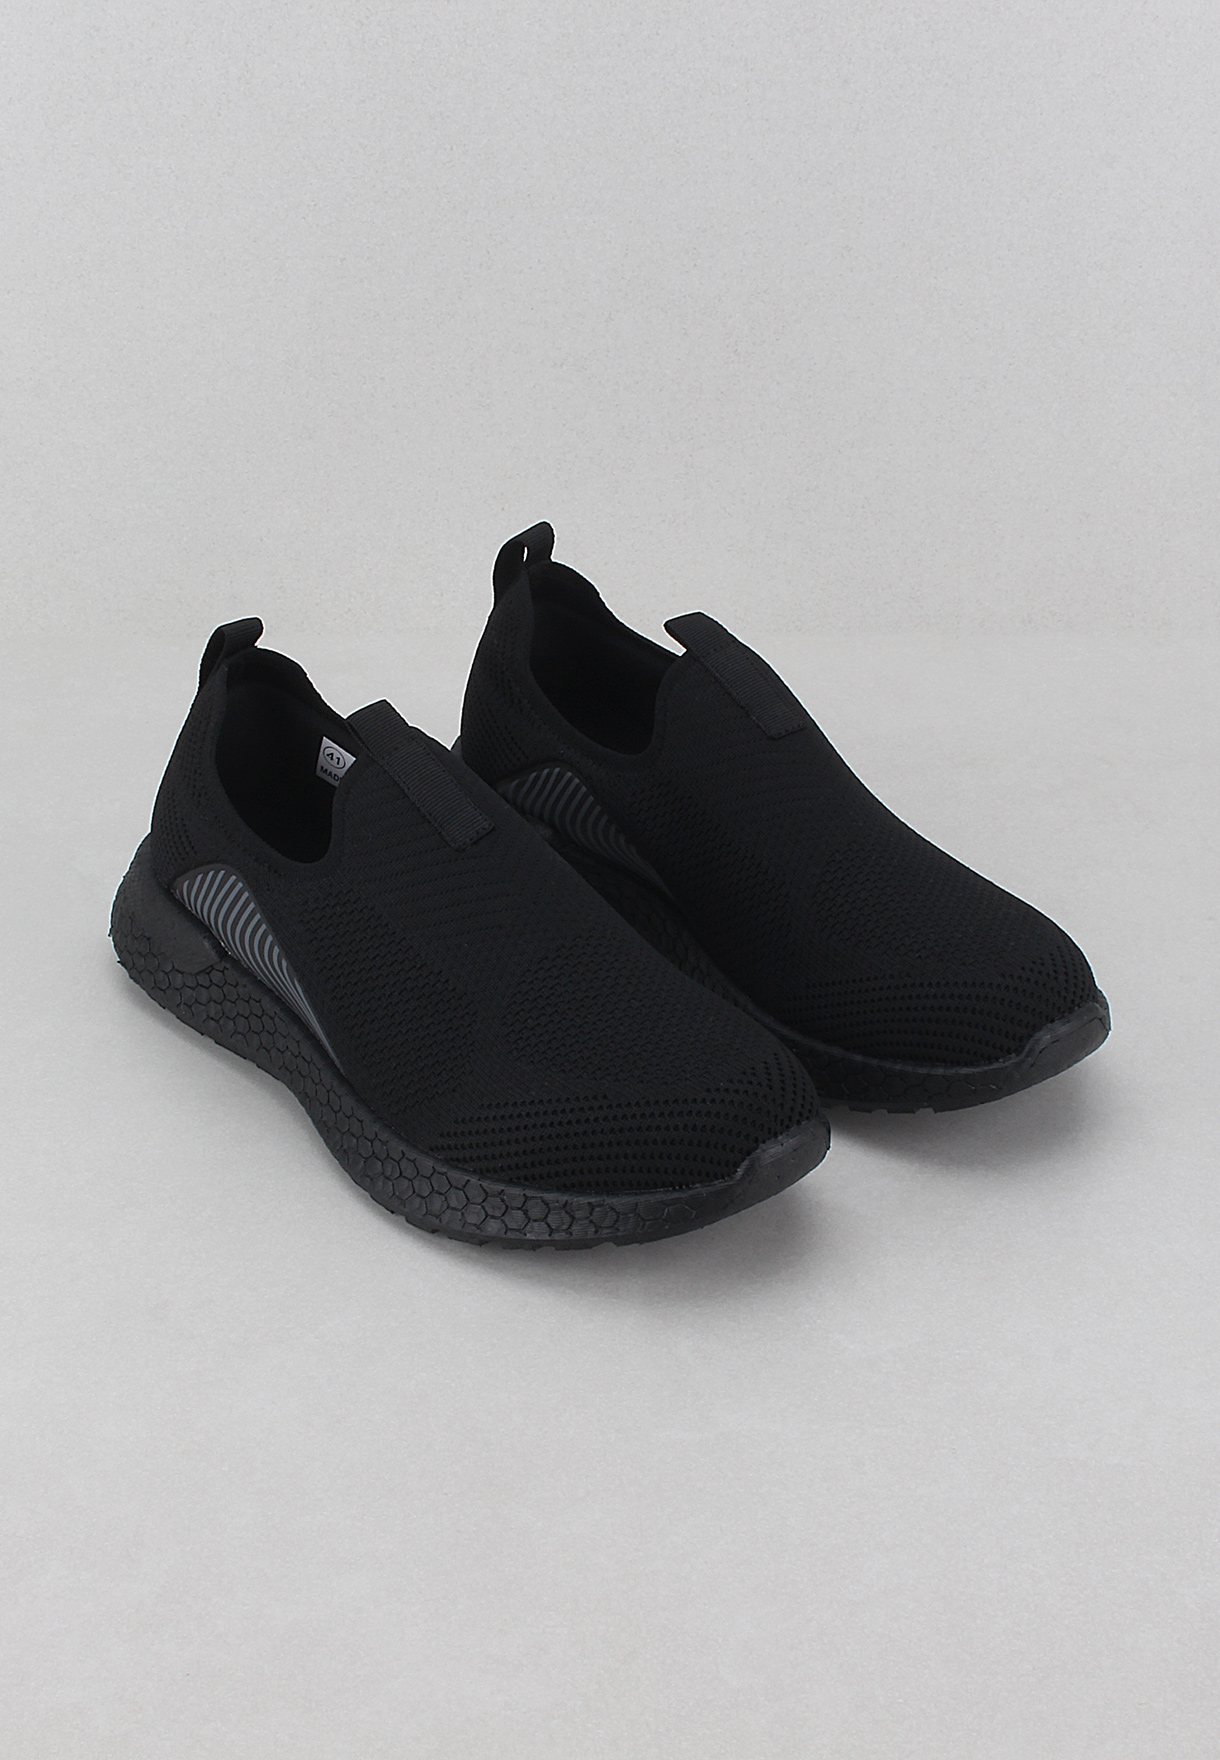 Men : Walkmat Men's Casual Shoes Black